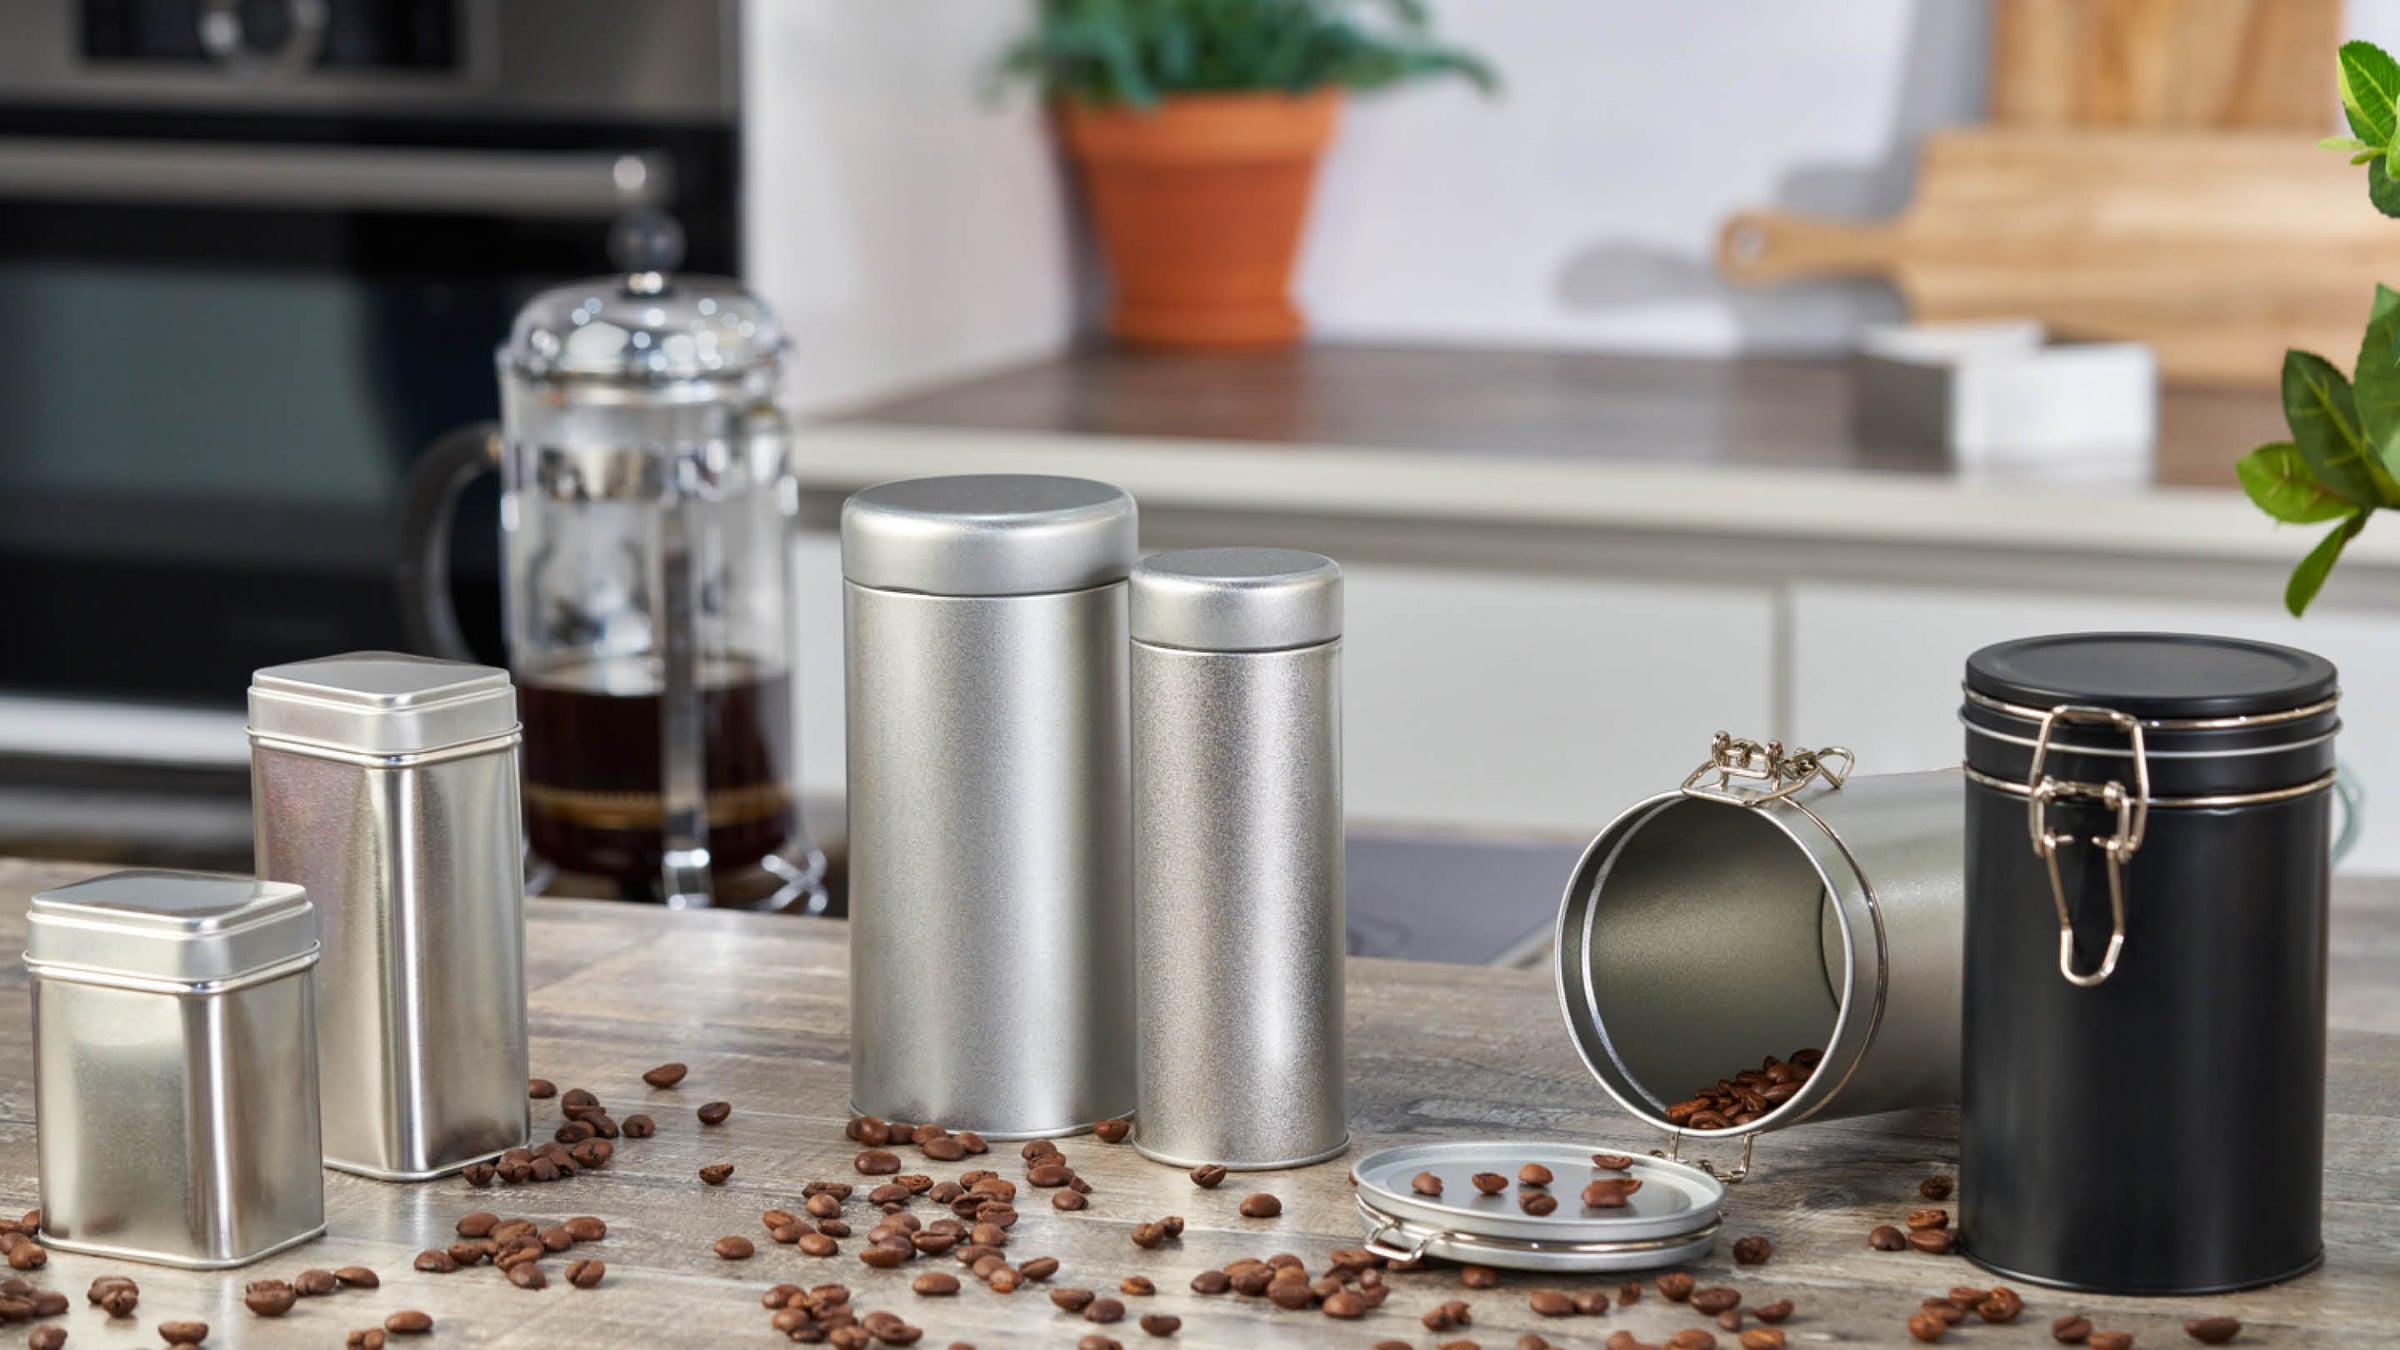 Una amplia gama de envases metálicos para cafes, especias y hierbas en la cocina